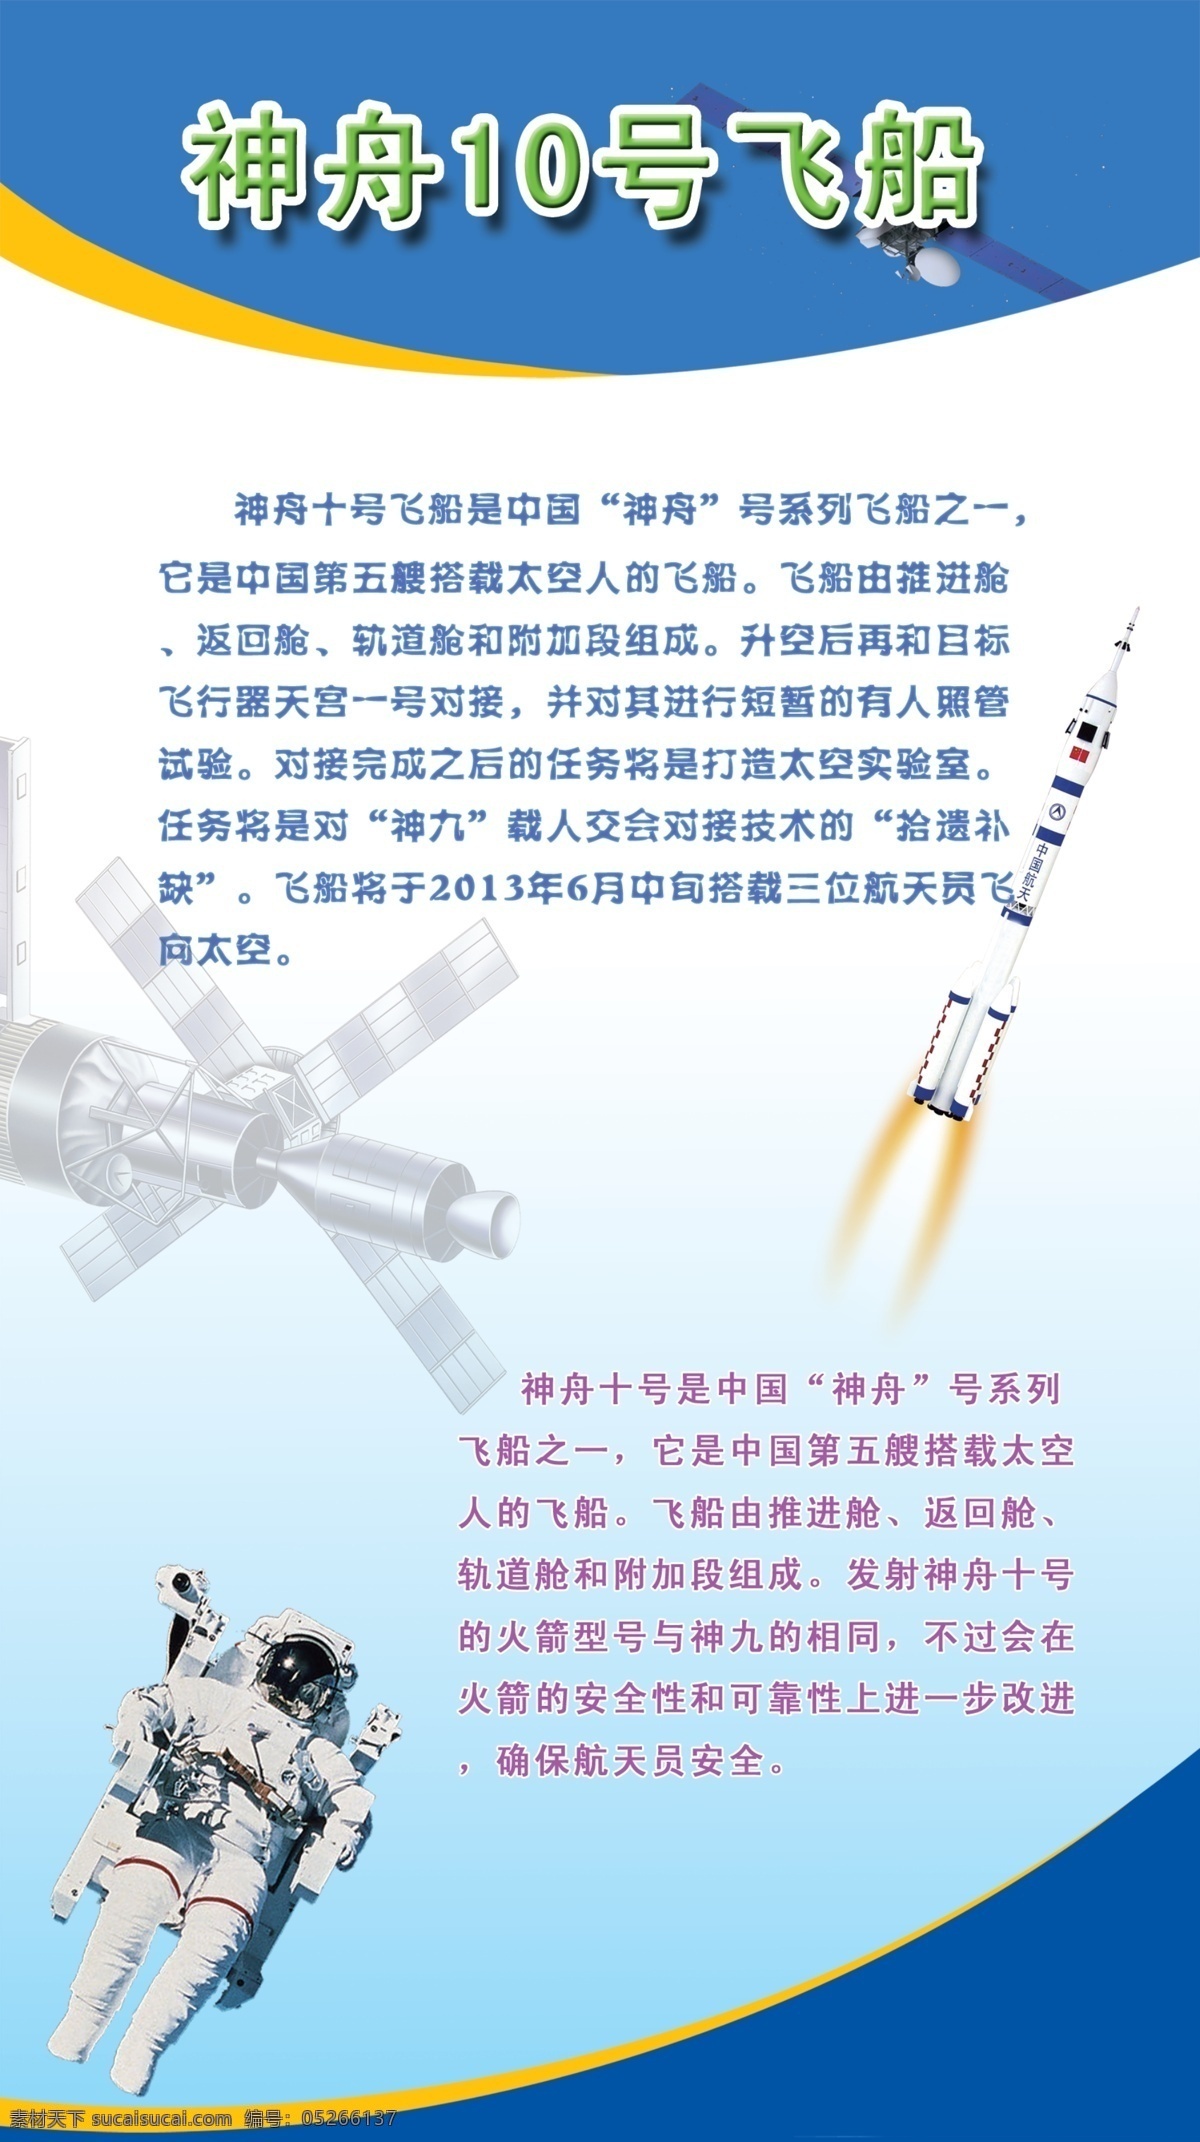 广告设计模板 航天 科技 卫星 源文件 展板模板 中国航天 展板 模板下载 神舟飞船 神舟10号 其他展板设计